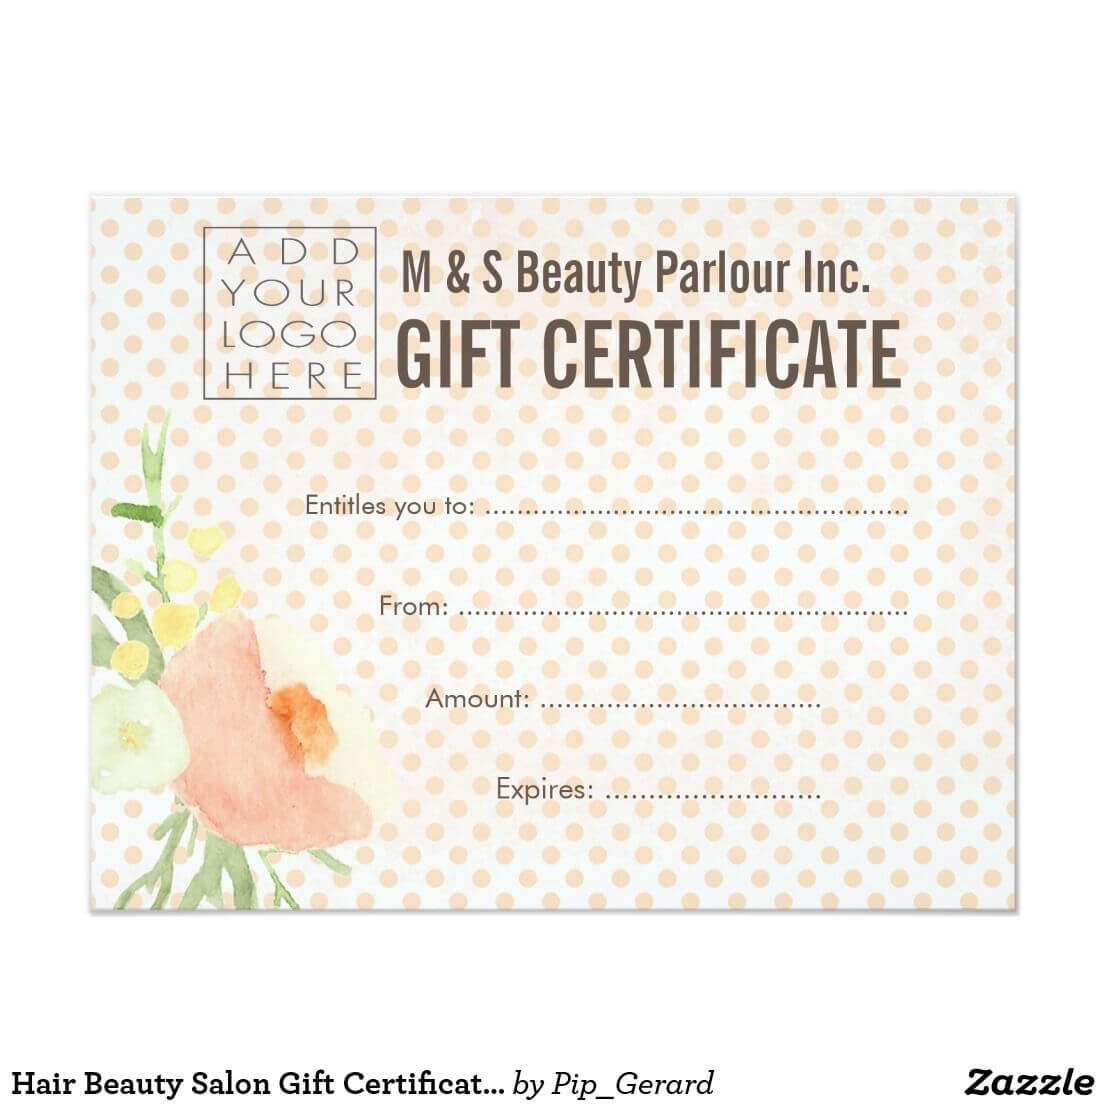 Hair Beauty Salon Gift Certificate Template | Zazzle Pertaining To Salon Gift Certificate Template